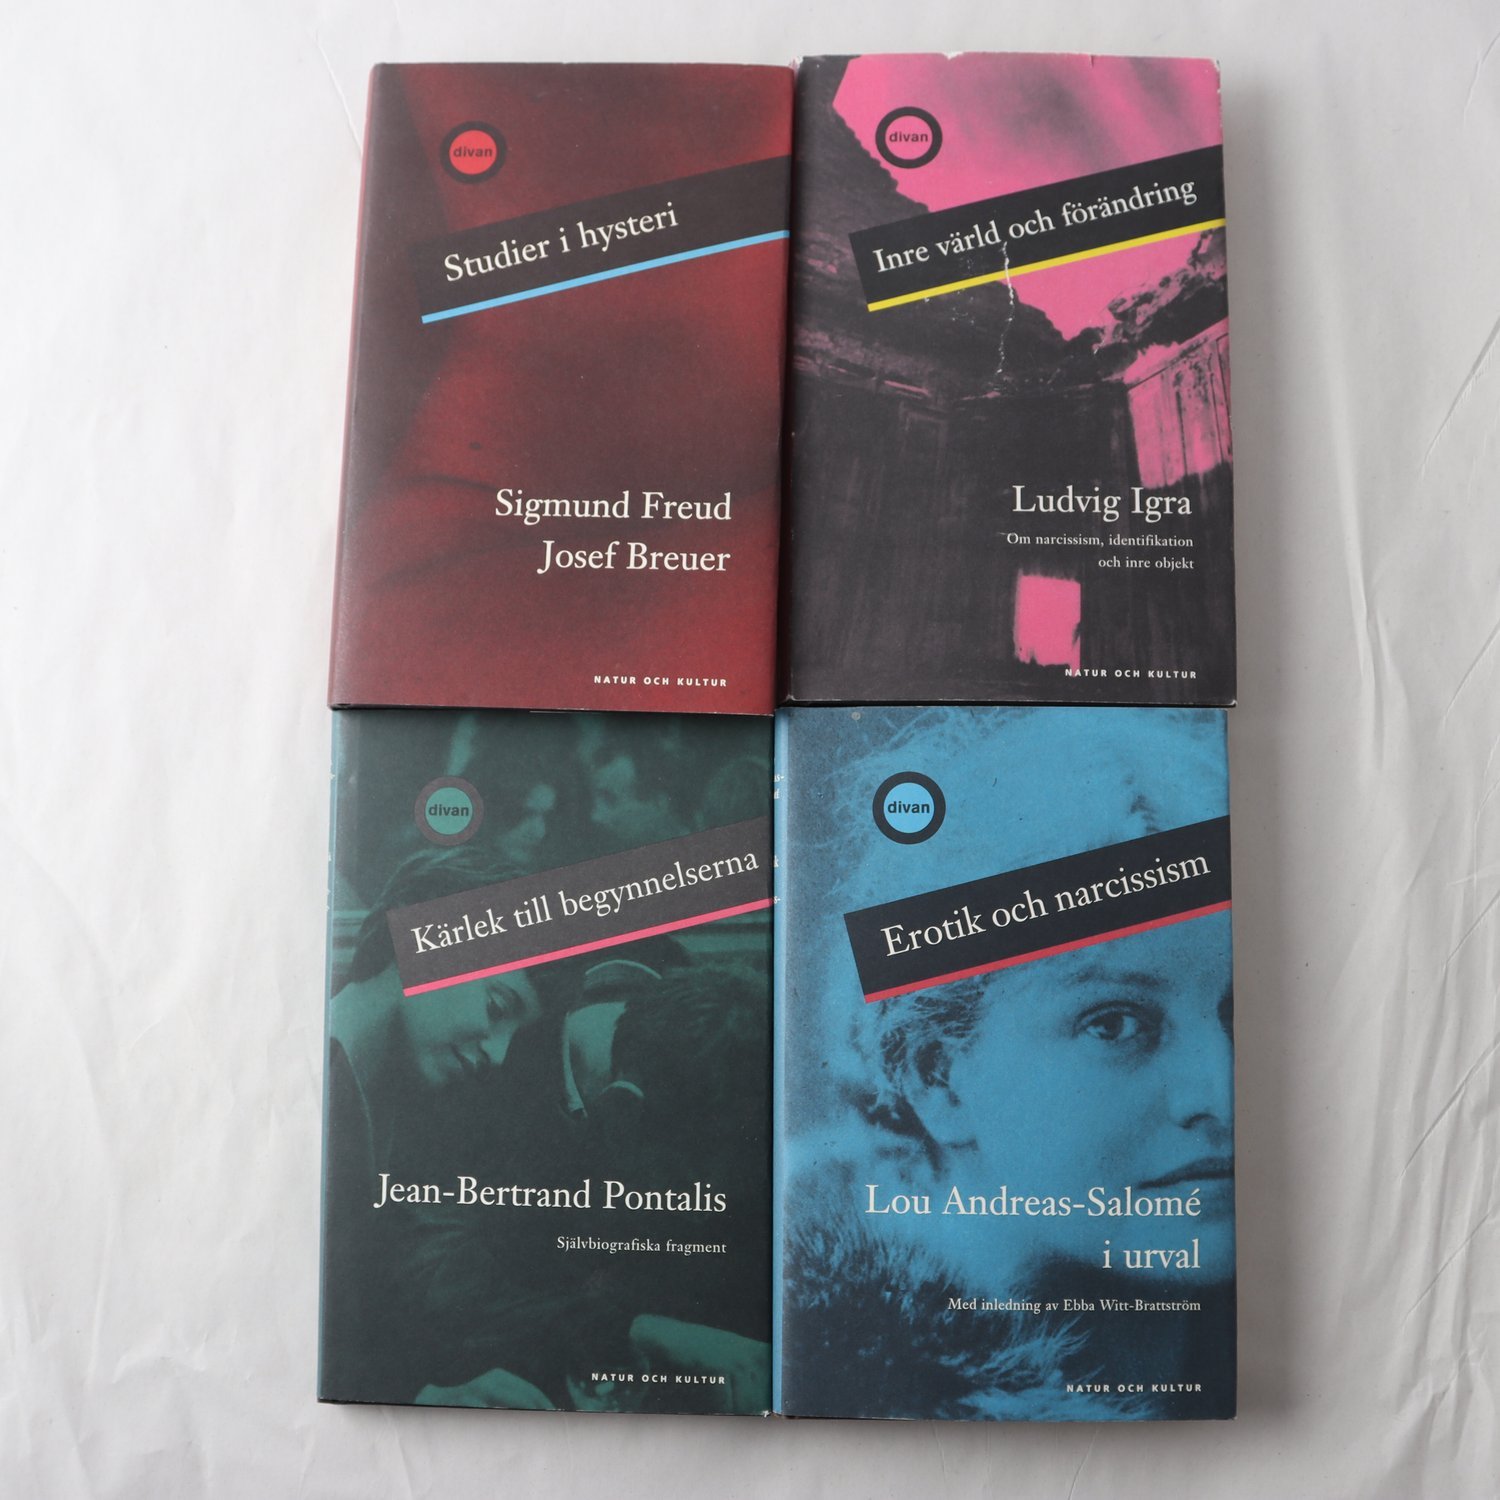 Psykoanalys, 4 volymer i Divan-serien